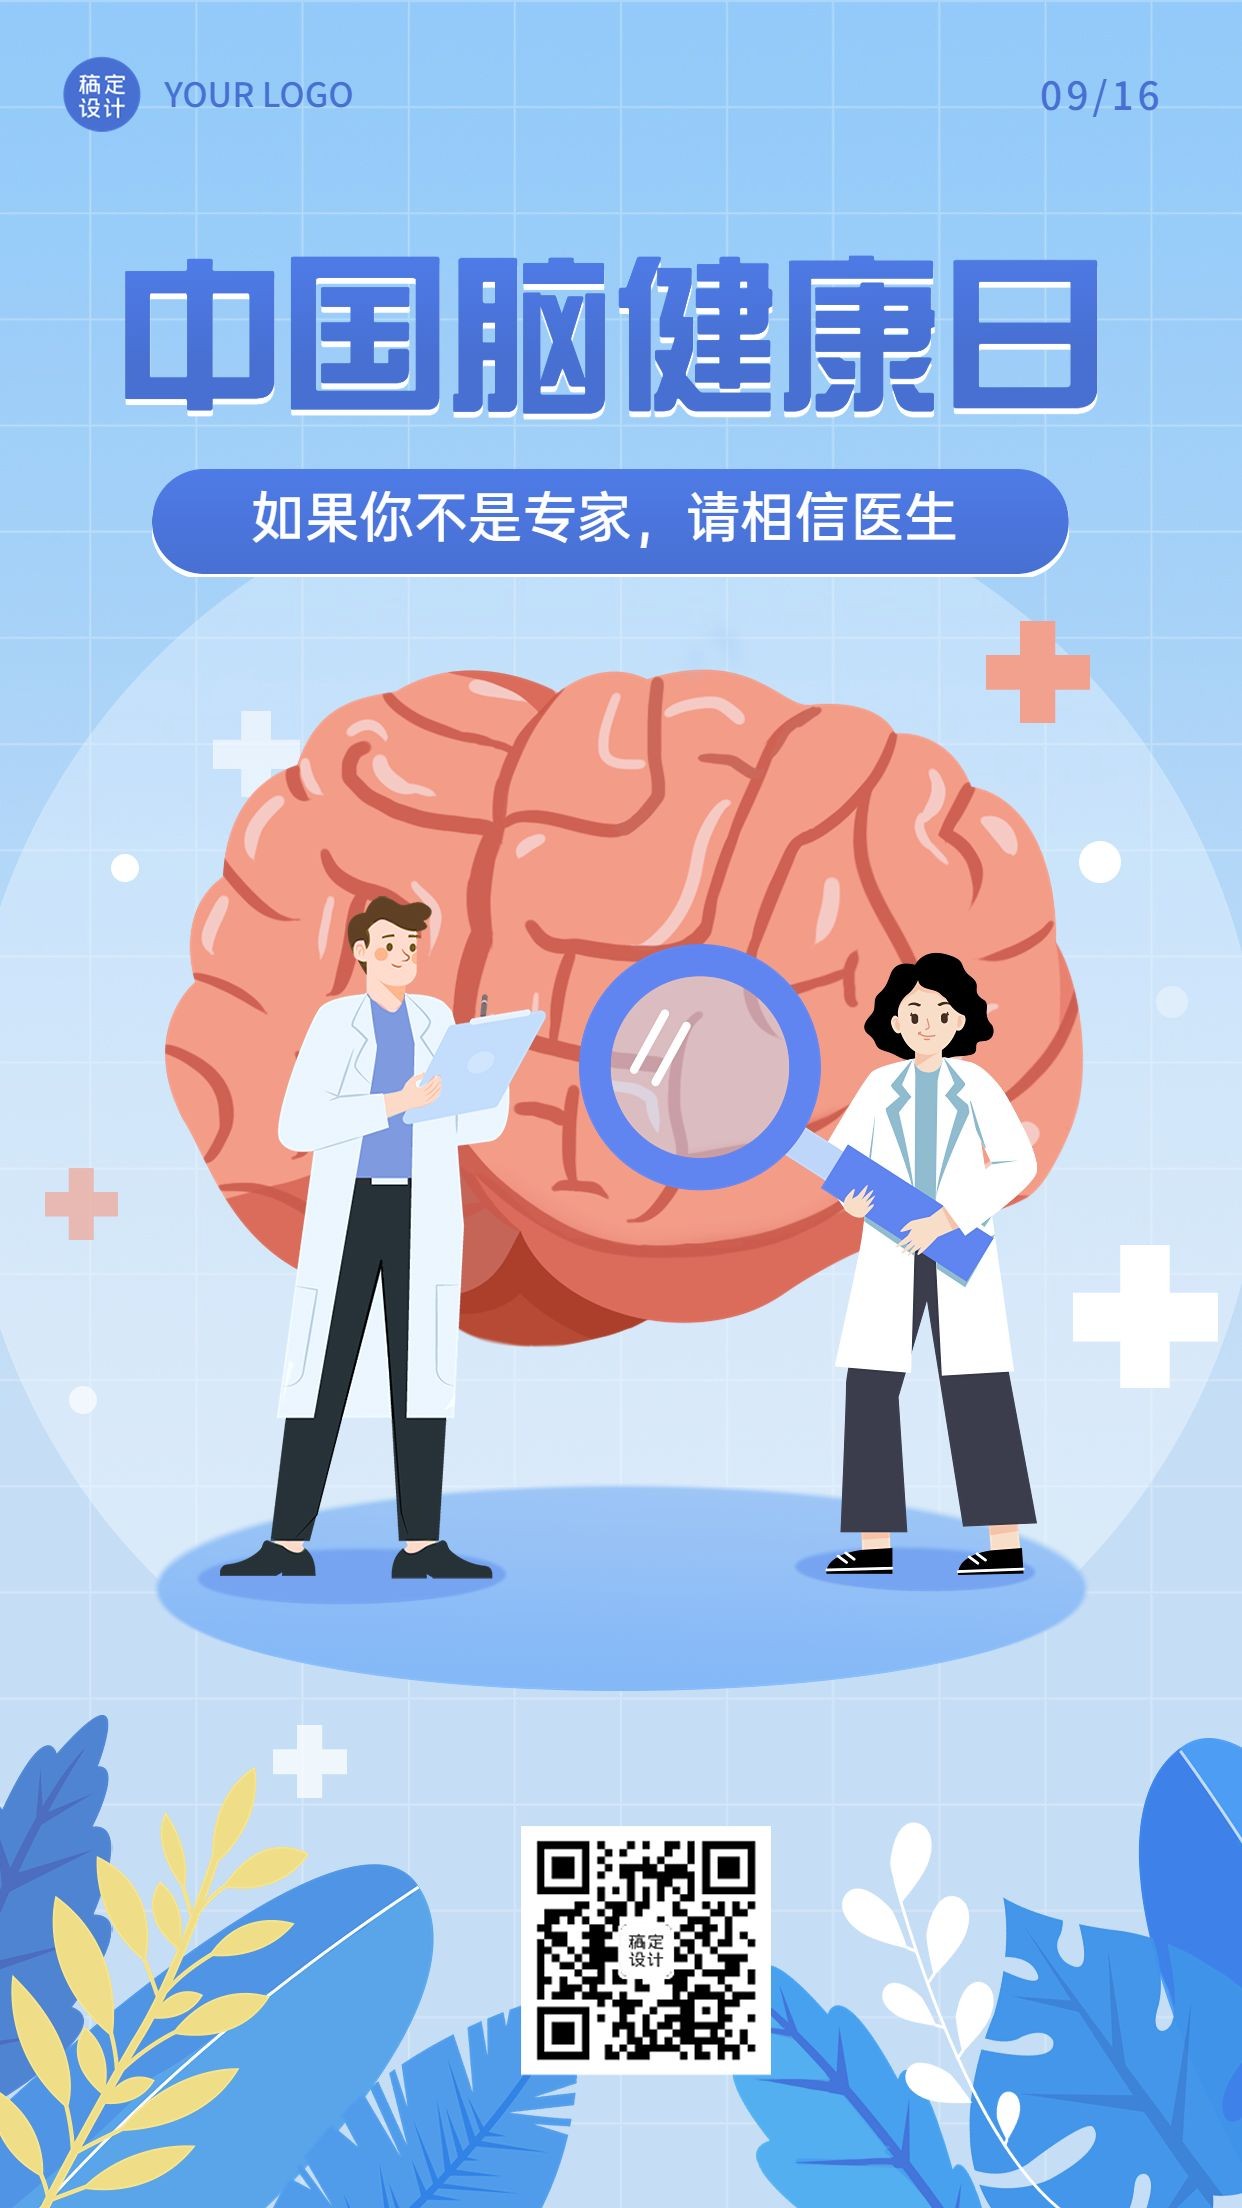 中国脑健康日节日宣传插画手机海报